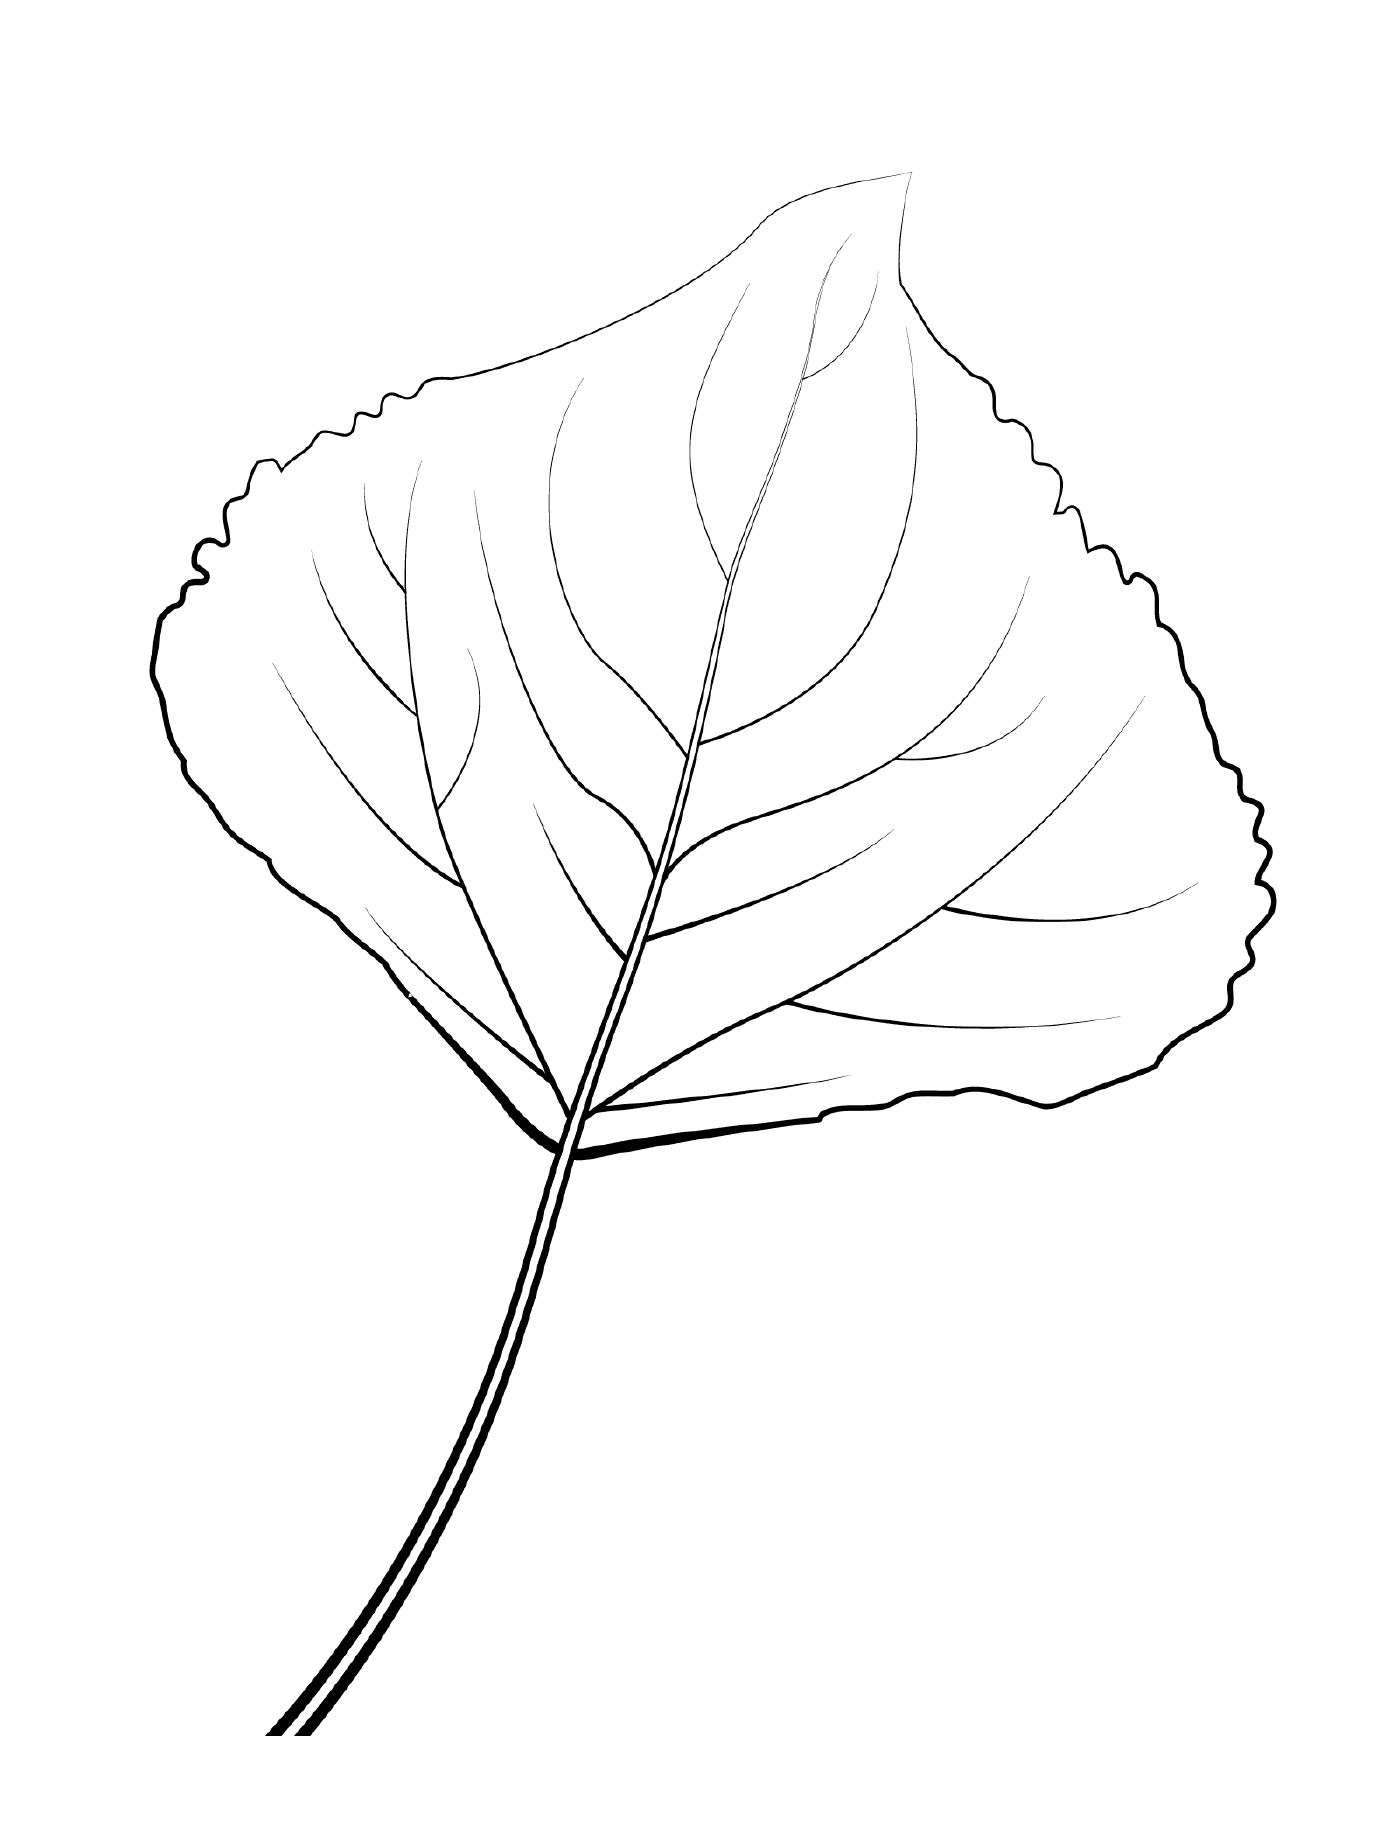  Langorangenpappelblatt 